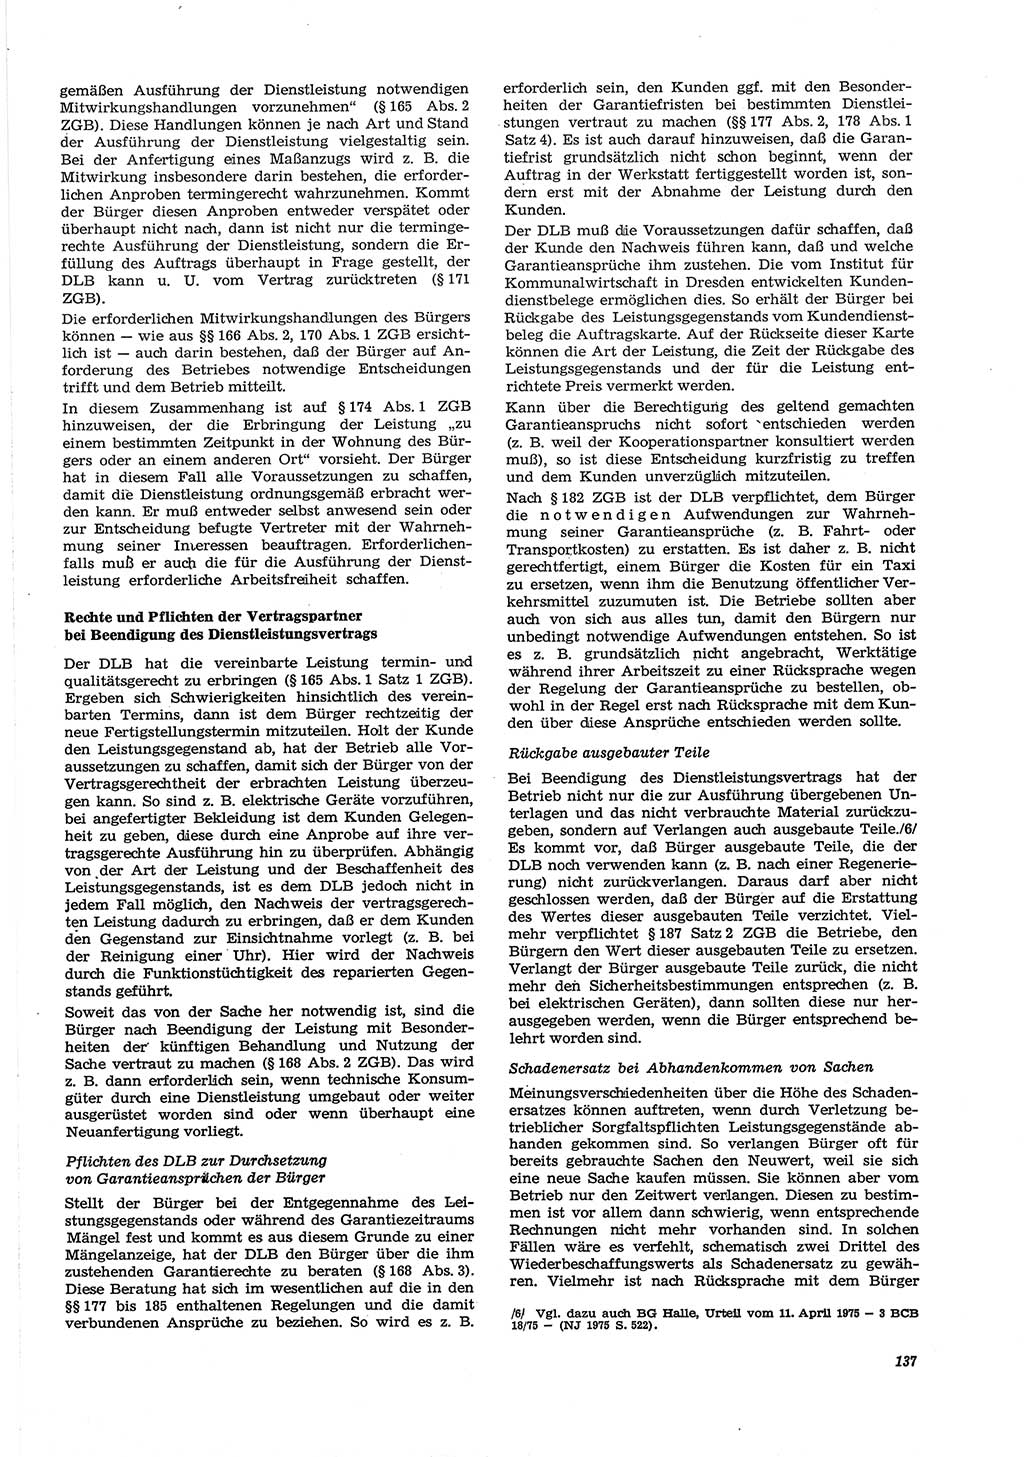 Neue Justiz (NJ), Zeitschrift für Recht und Rechtswissenschaft [Deutsche Demokratische Republik (DDR)], 30. Jahrgang 1976, Seite 137 (NJ DDR 1976, S. 137)